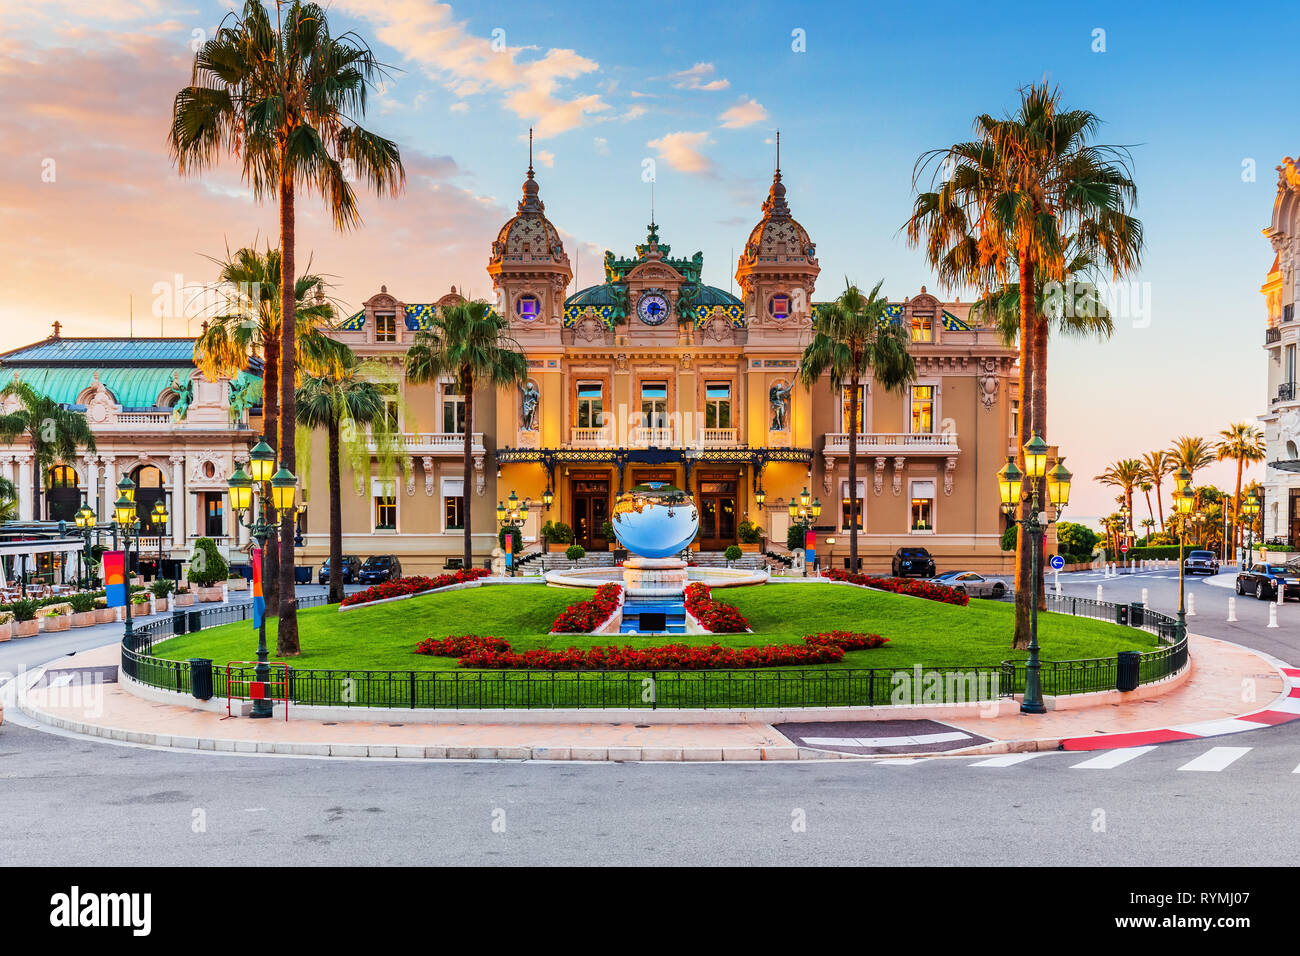 Monte Carlo, Monaco. Front of the Grand Casino at sunrise. Stock Photo